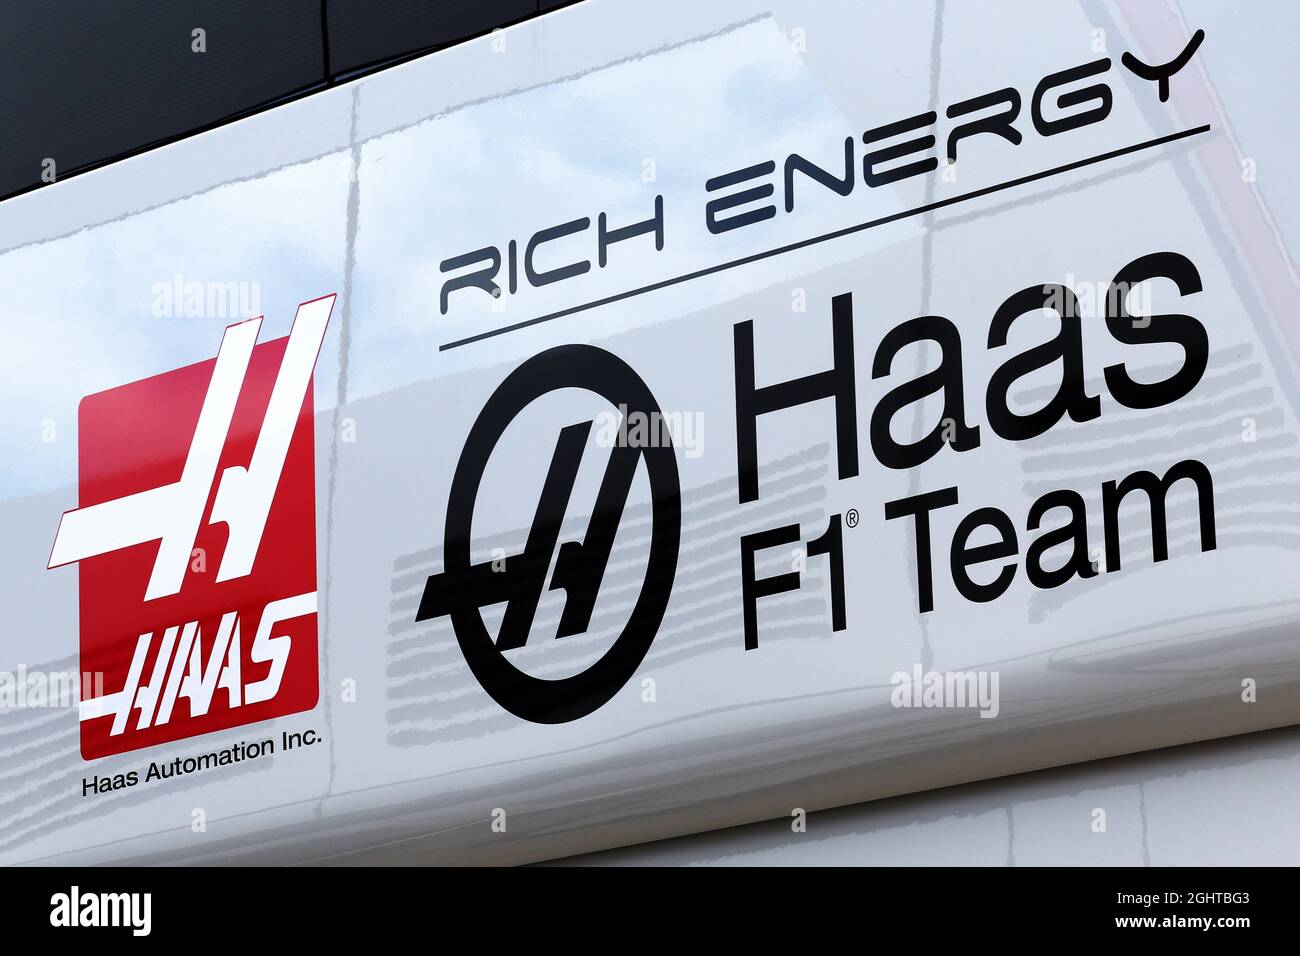 Logo de l'écurie Haas F1 Team avec la marque Rich Energy. 11.07.2019. Championnat du monde de Formule 1, Rd 10, Grand Prix de Grande-Bretagne, Silverstone, Angleterre, Journée de préparation. Le crédit photo doit être lu : images XPB/Press Association. Banque D'Images